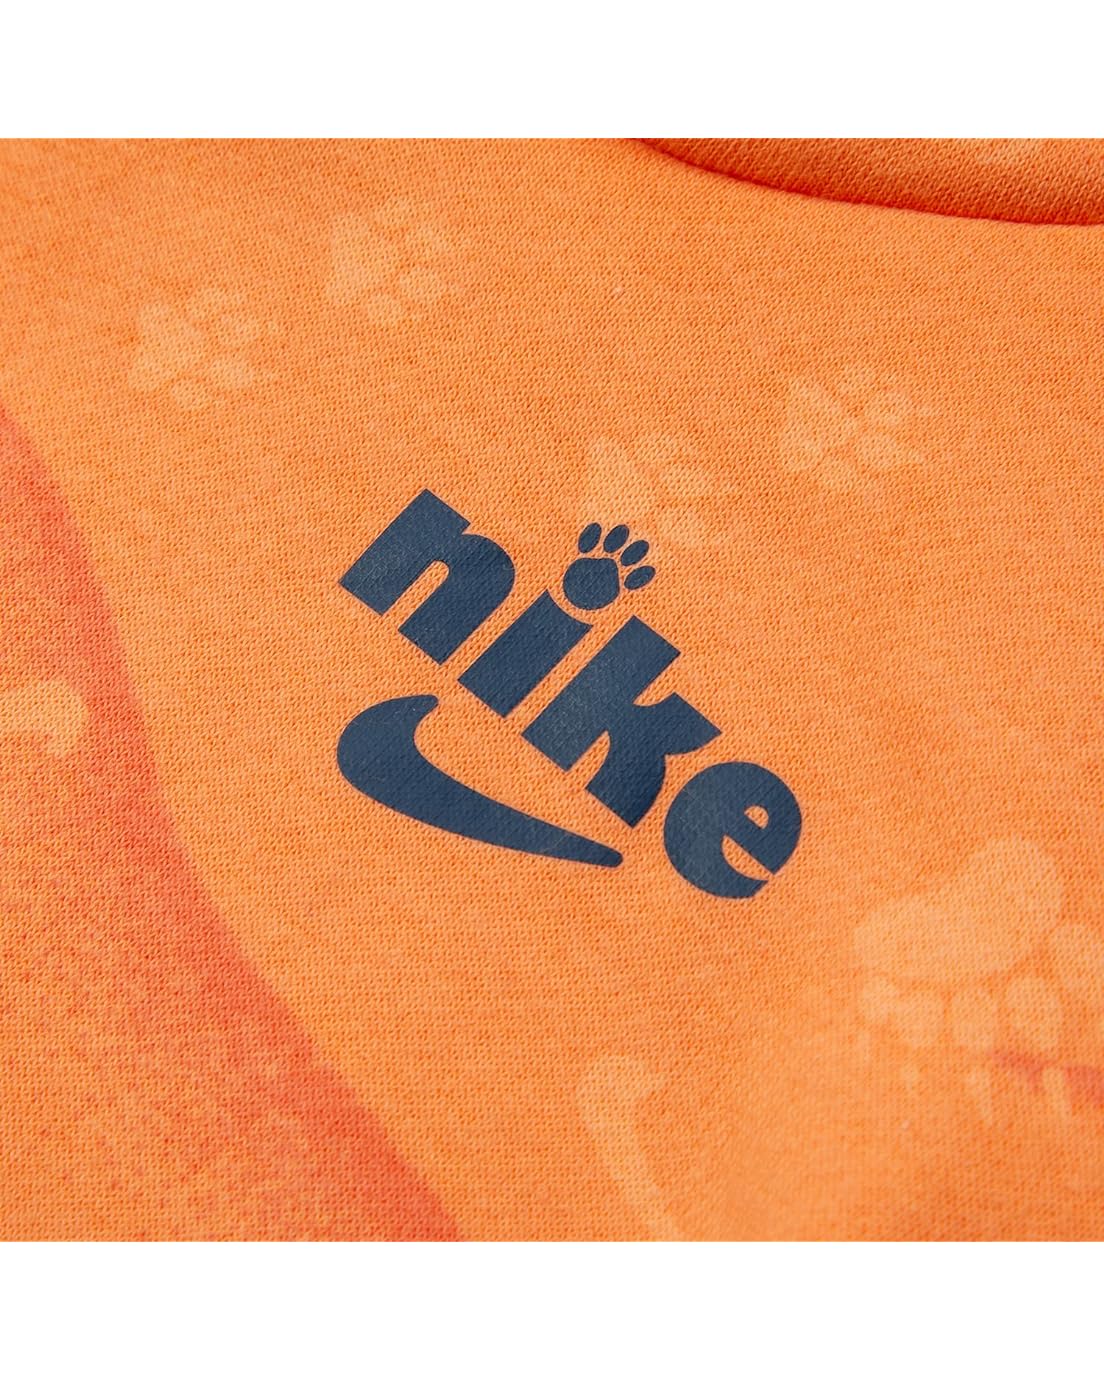 나이키 Nike Kids Track Pack Fleece Pullover Set (Toddler)